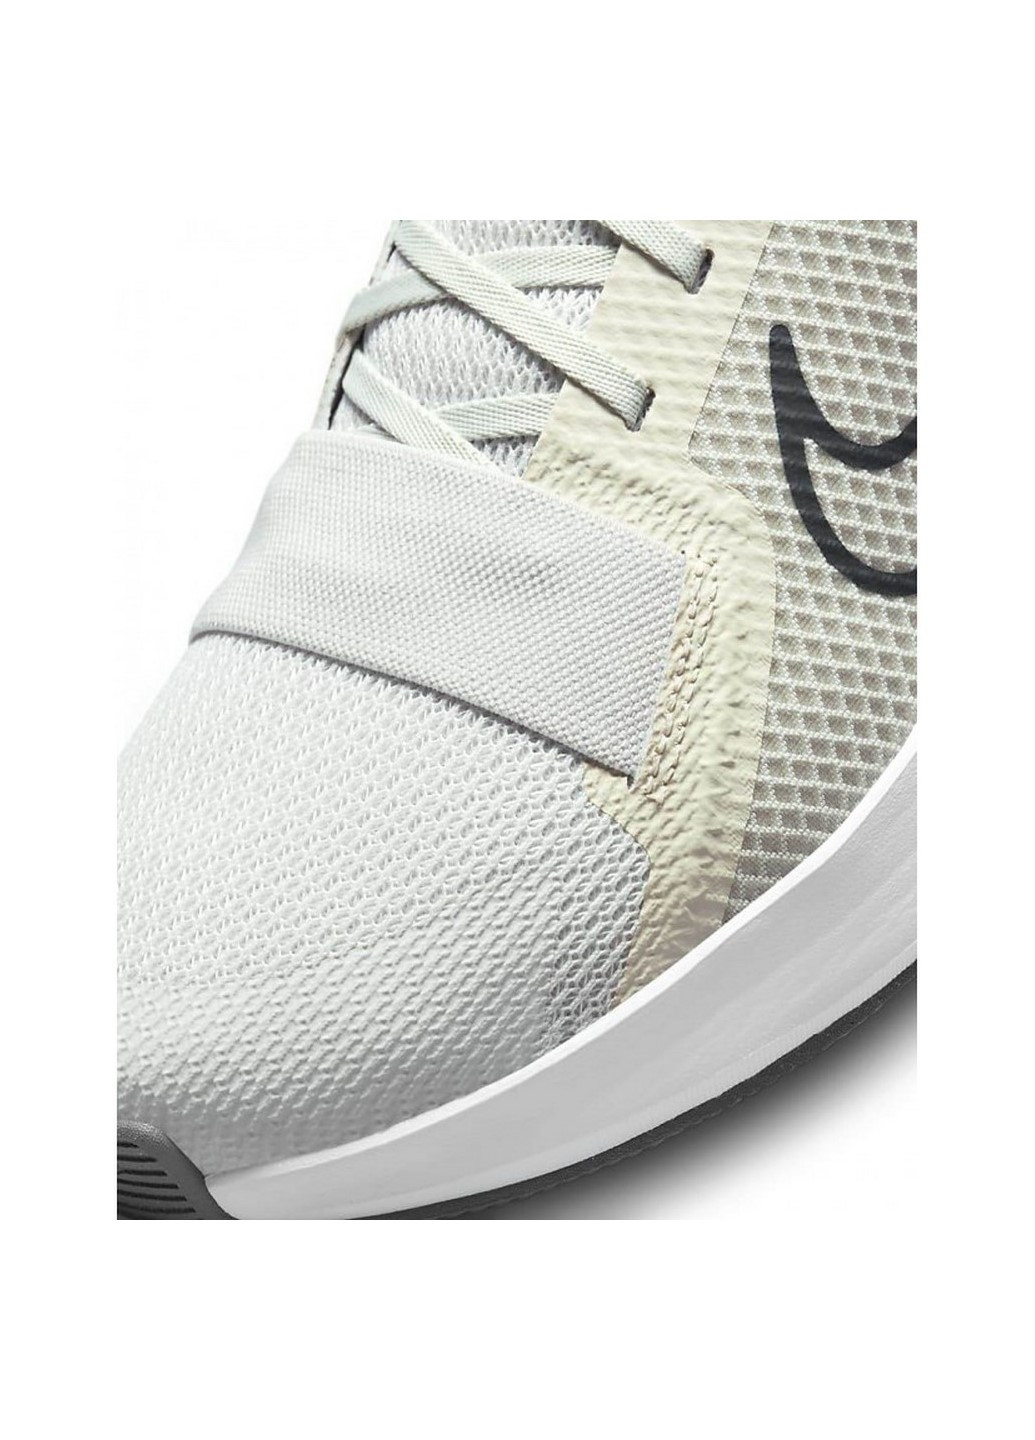 Серые всесезонные кроссовки мужские dm0823-004 Nike MC TRAINER 2